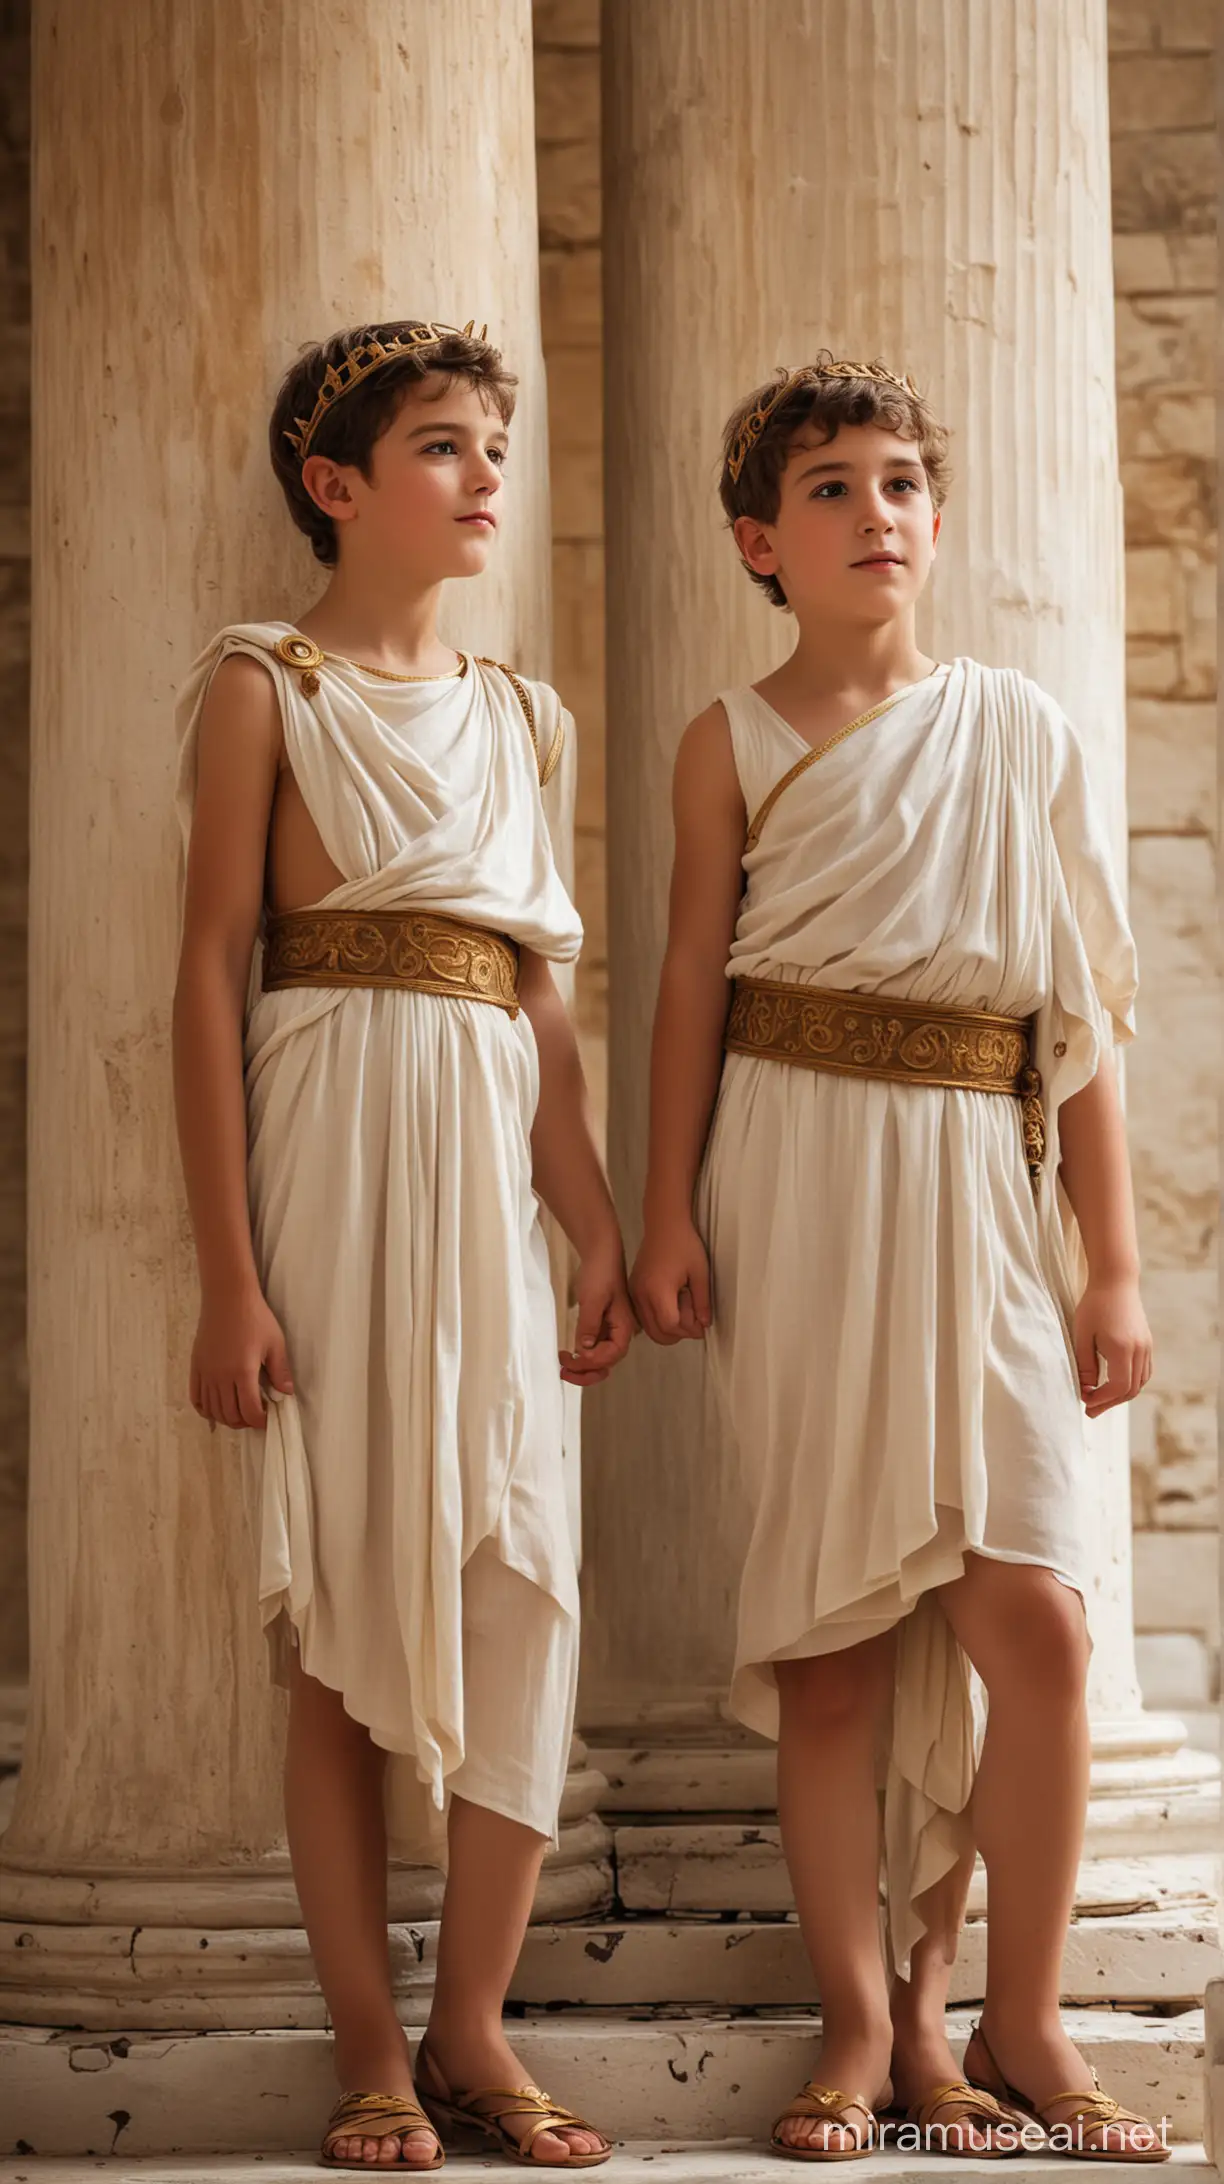 2 niños varoenes principes, ambiente griego antiguo